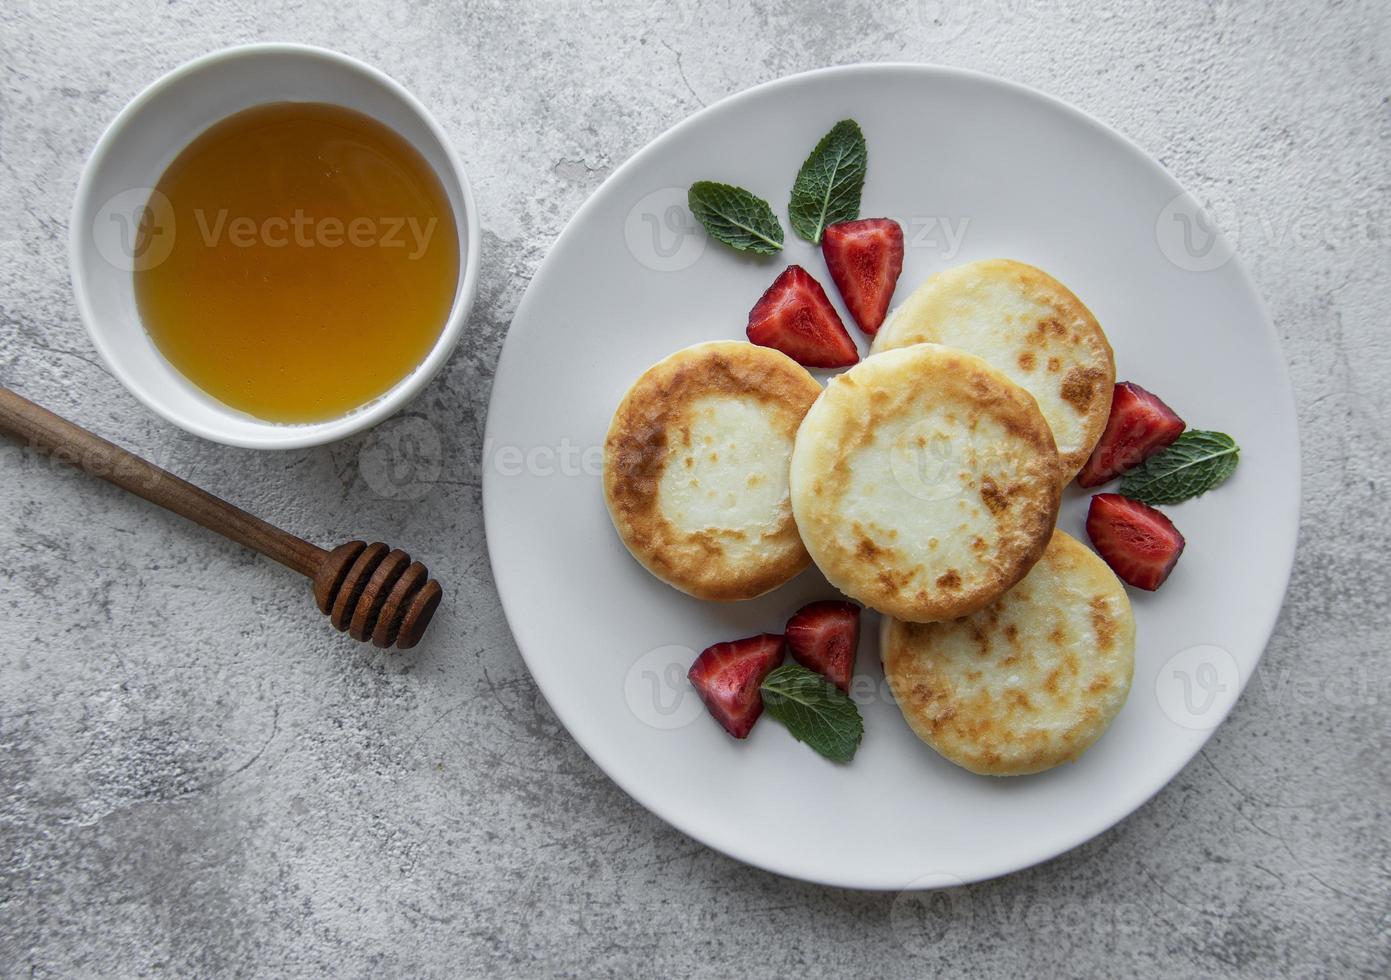 keso, pannkakor, ricottafritter på keramisk tallrik med färsk jordgubbe foto